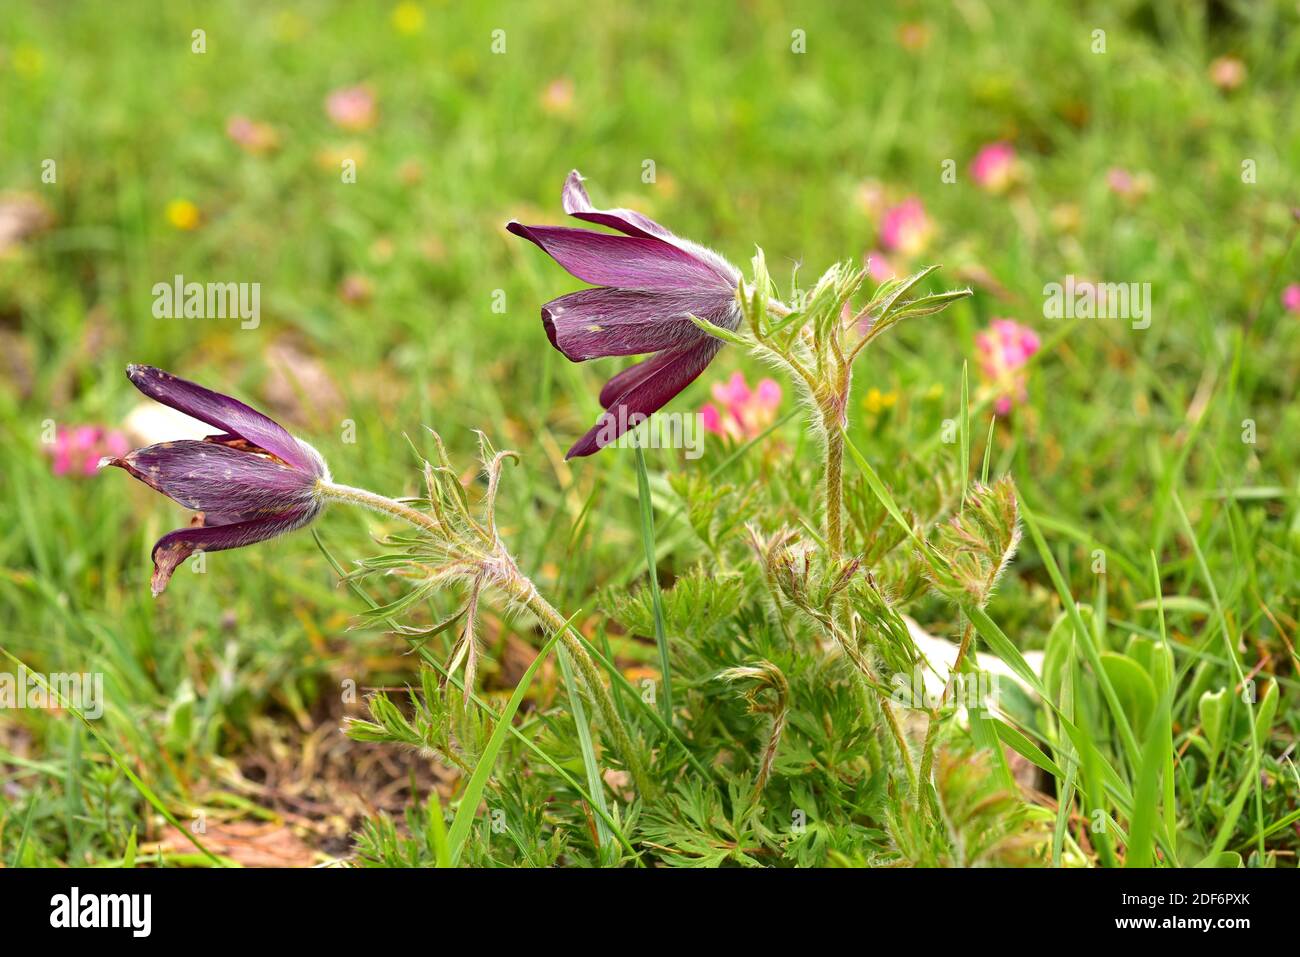 La flor de Pasque (Pulsatilla vulgaris hispanica o Anemone vulgaris hispanica) es una subespecie endémica de las montañas cántabras. Esta foto fue tomada Foto de stock